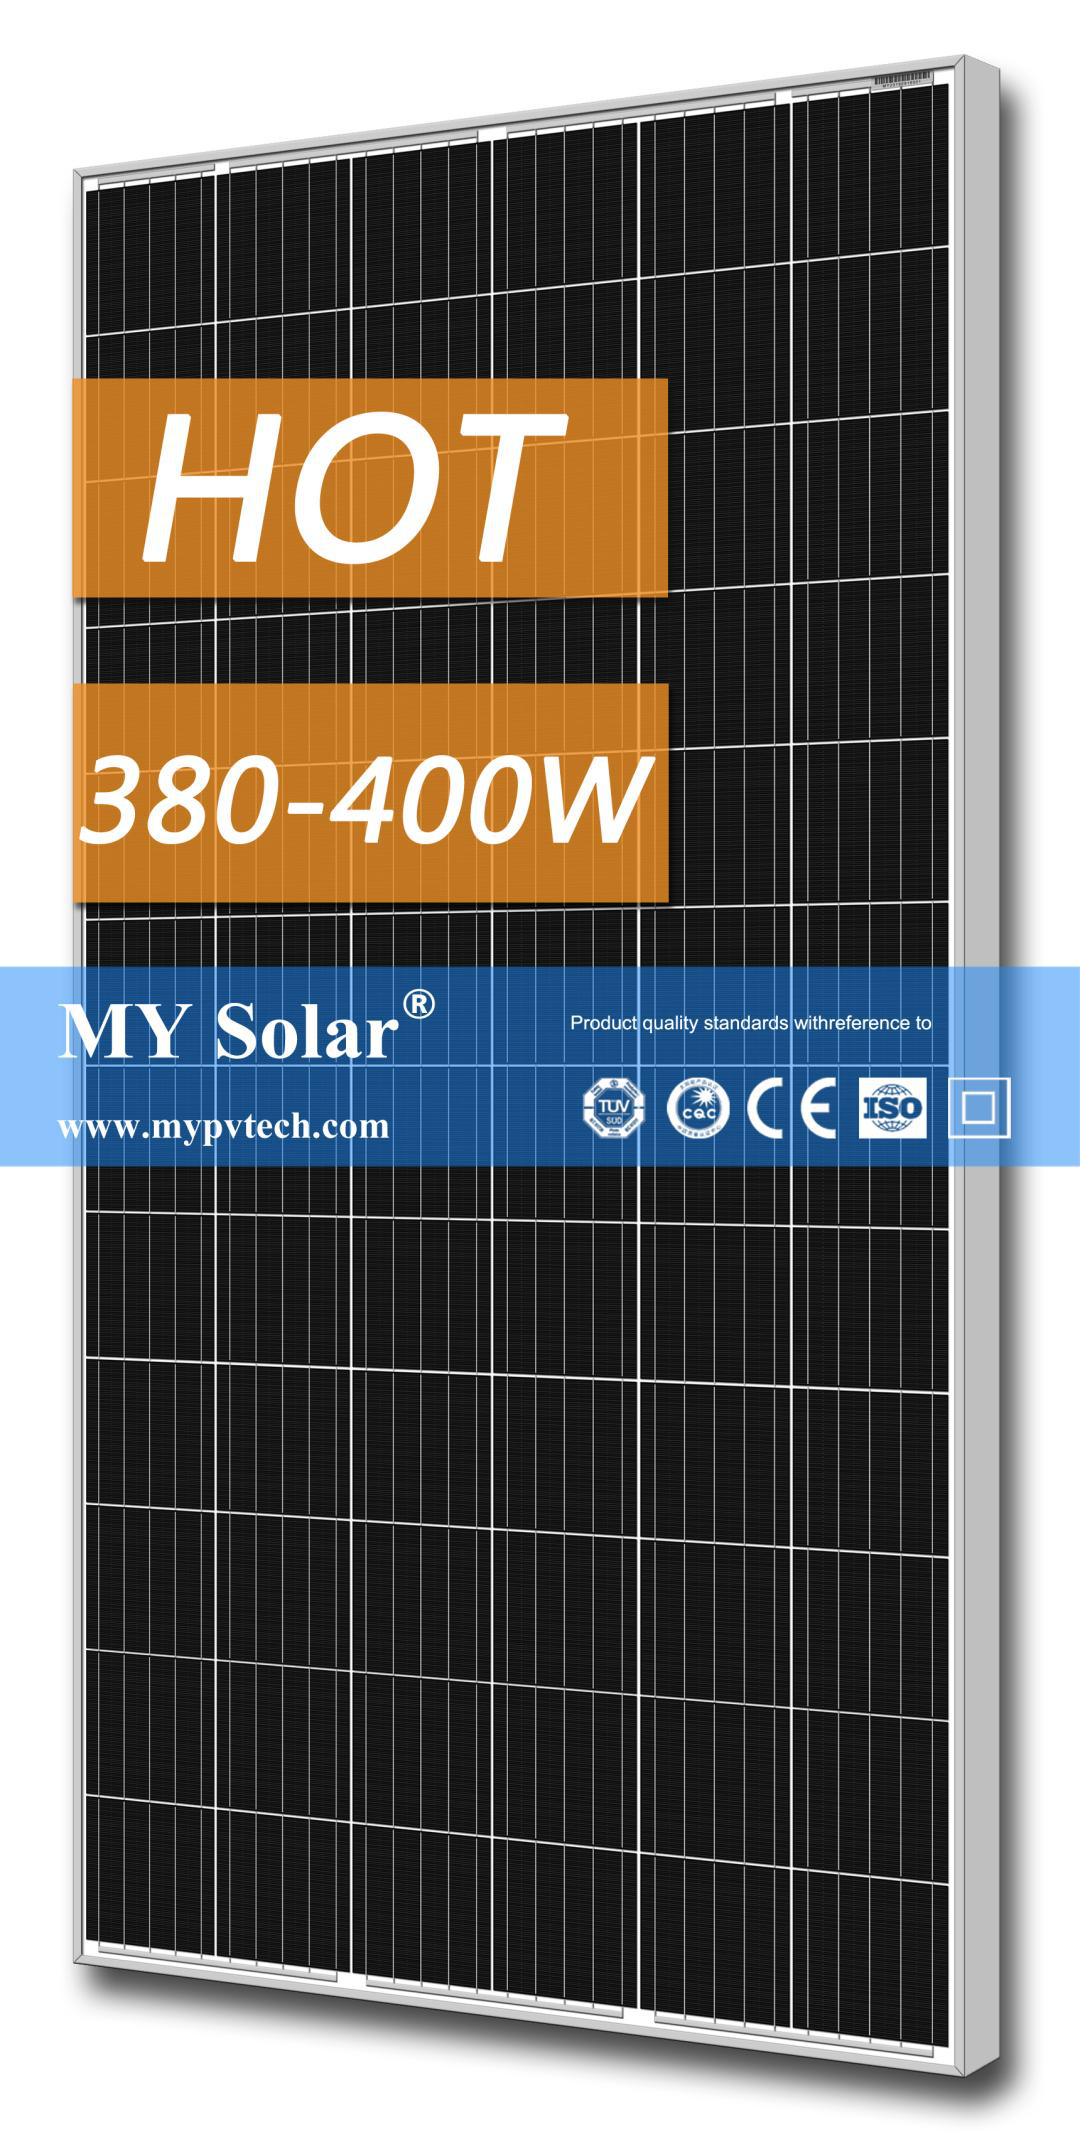 Best quality Solar Power System - [HOT]My Solar Brand & OEM Solar Module 395W High Efficiency Solar Panel – My Solar